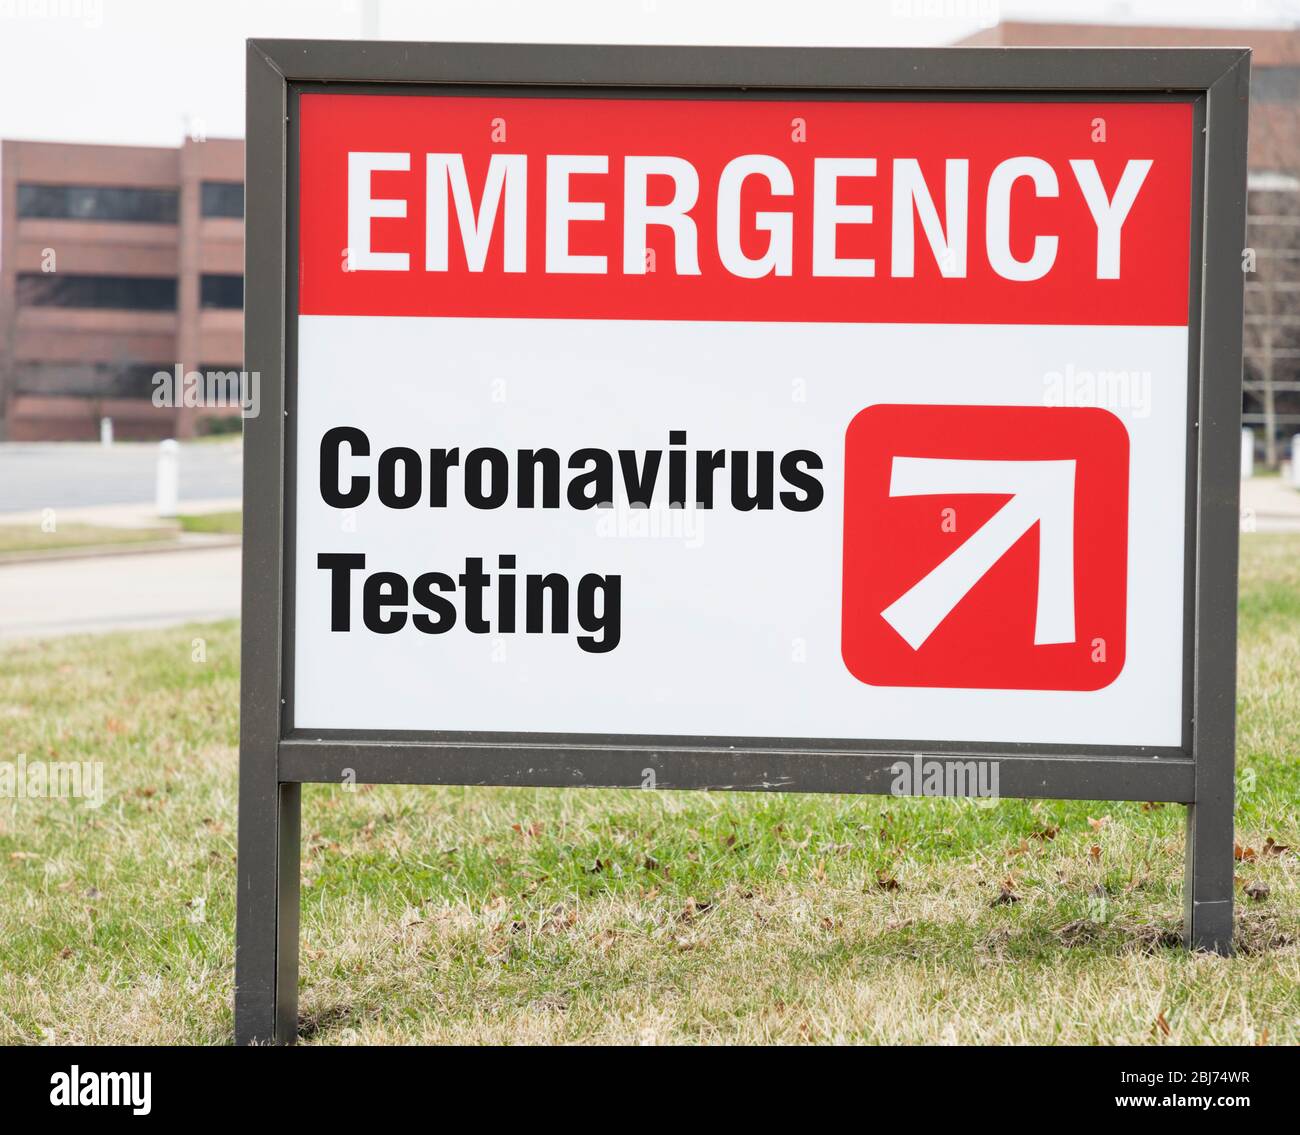 Emergency Coronavirus testing sign Stock Photo